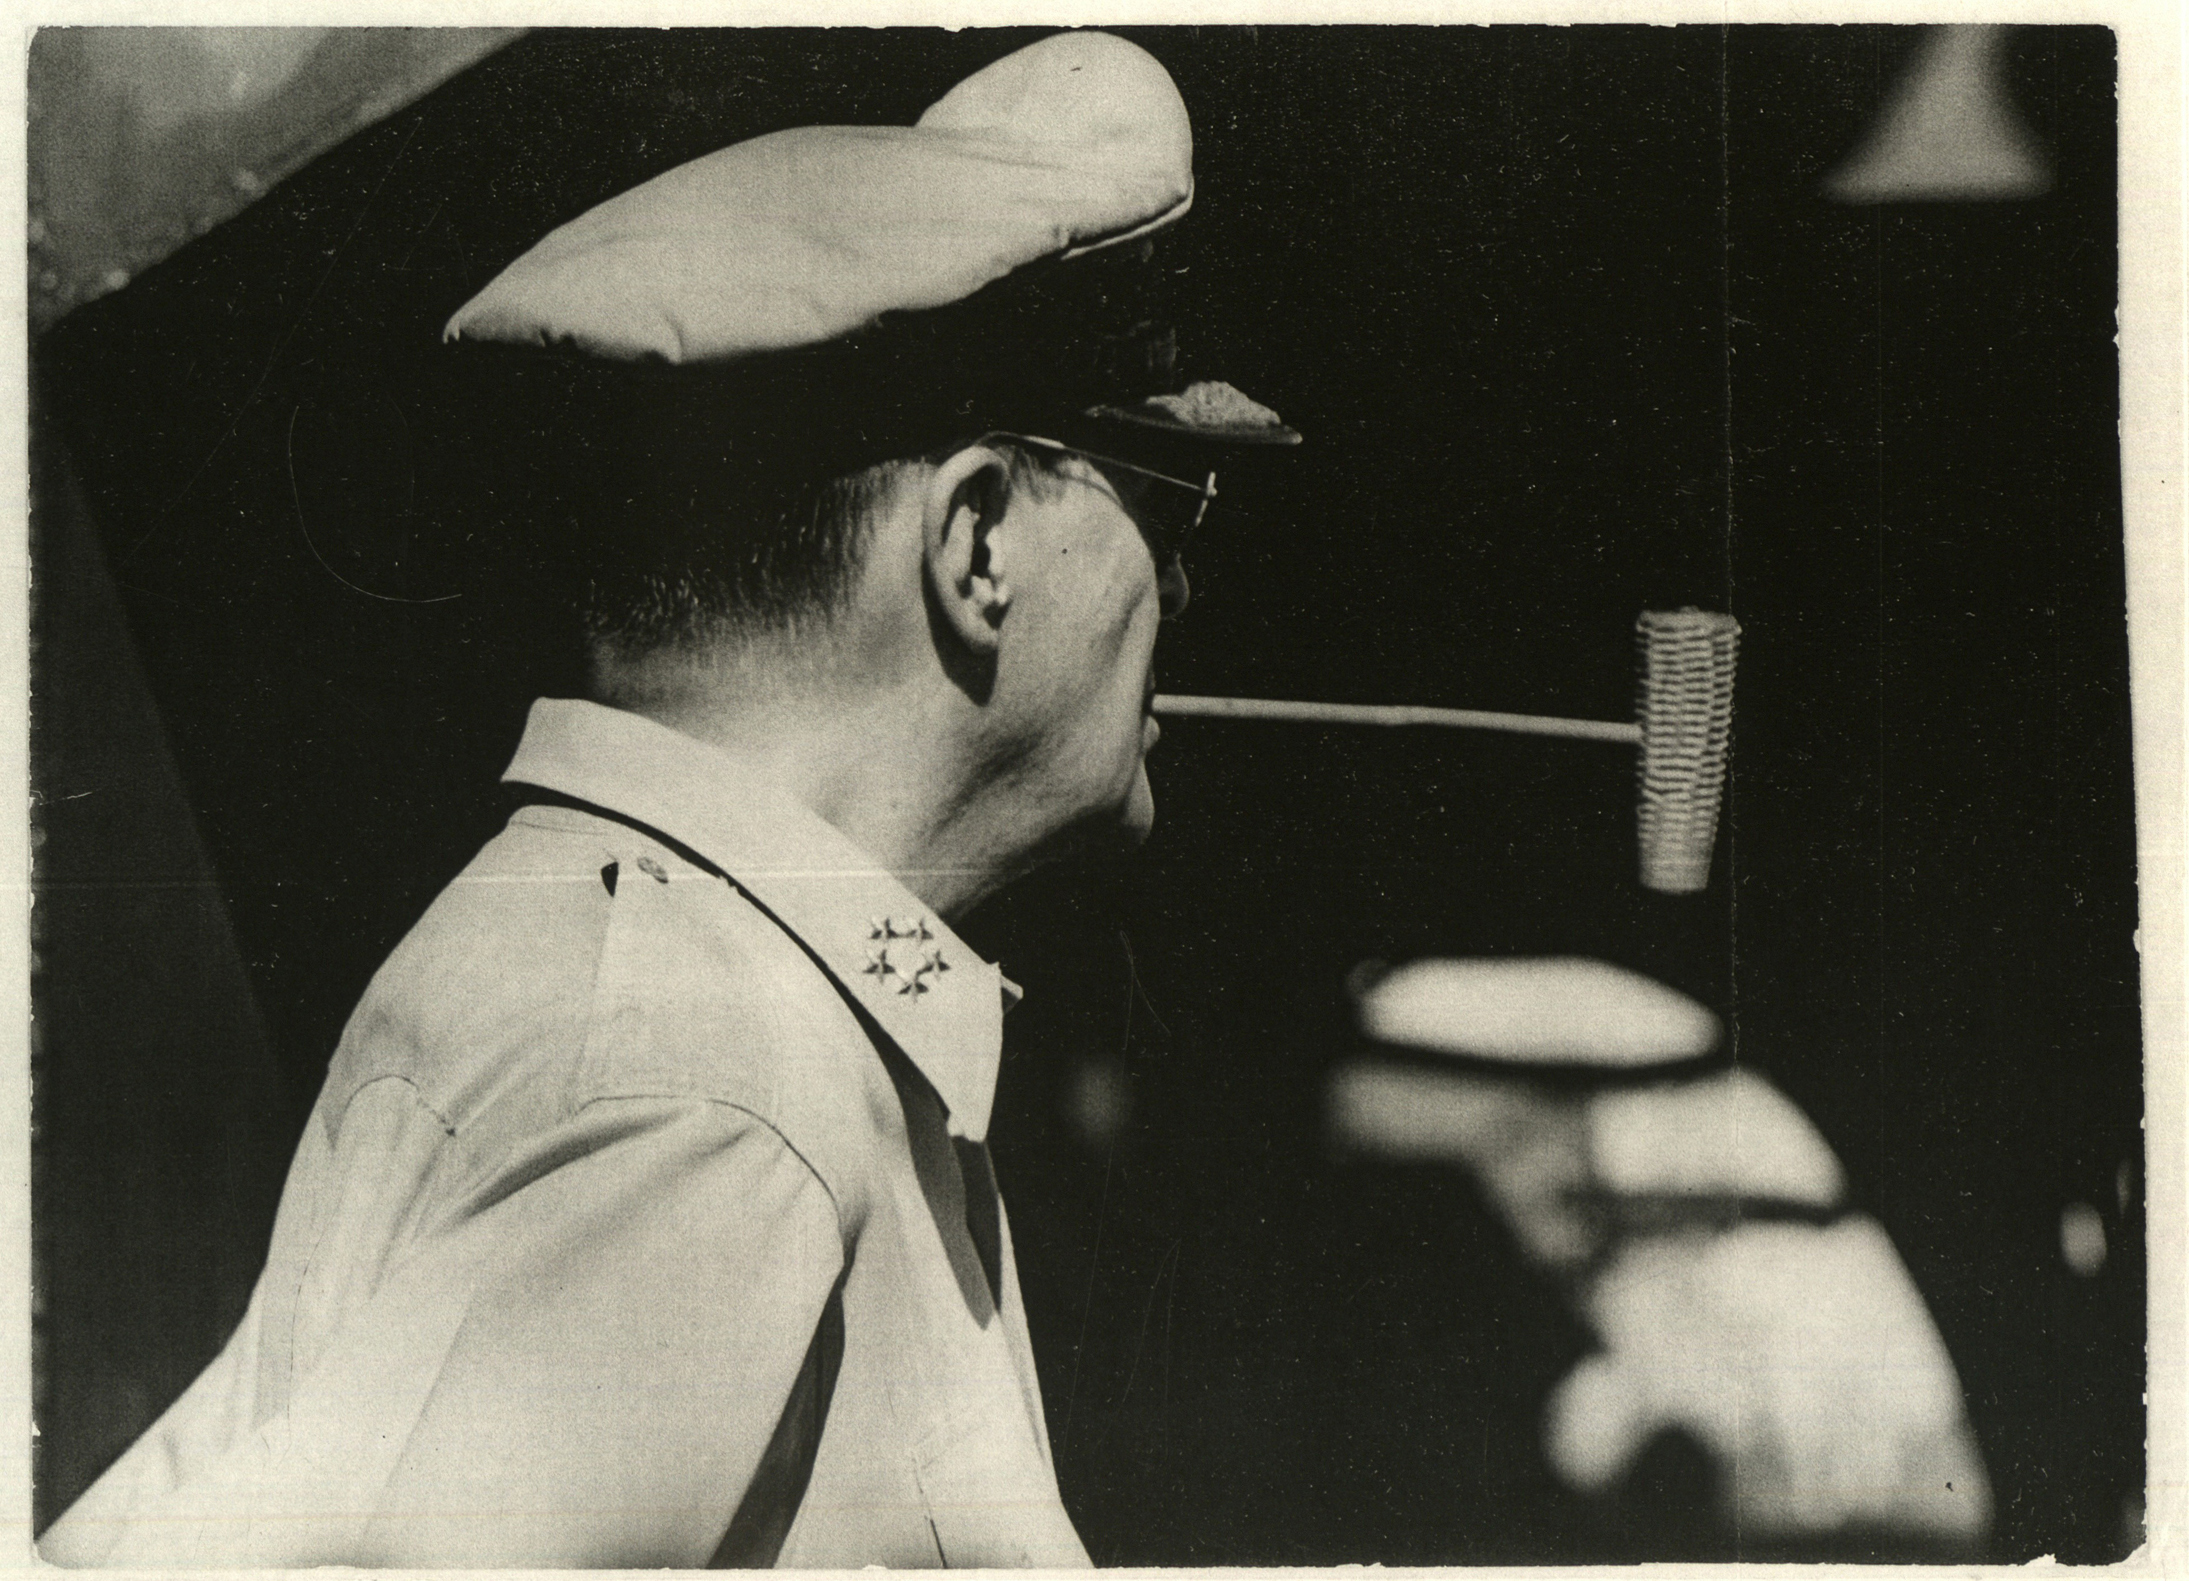 Gen. Douglas MacArthur with his signature corncob pipe, 1945.